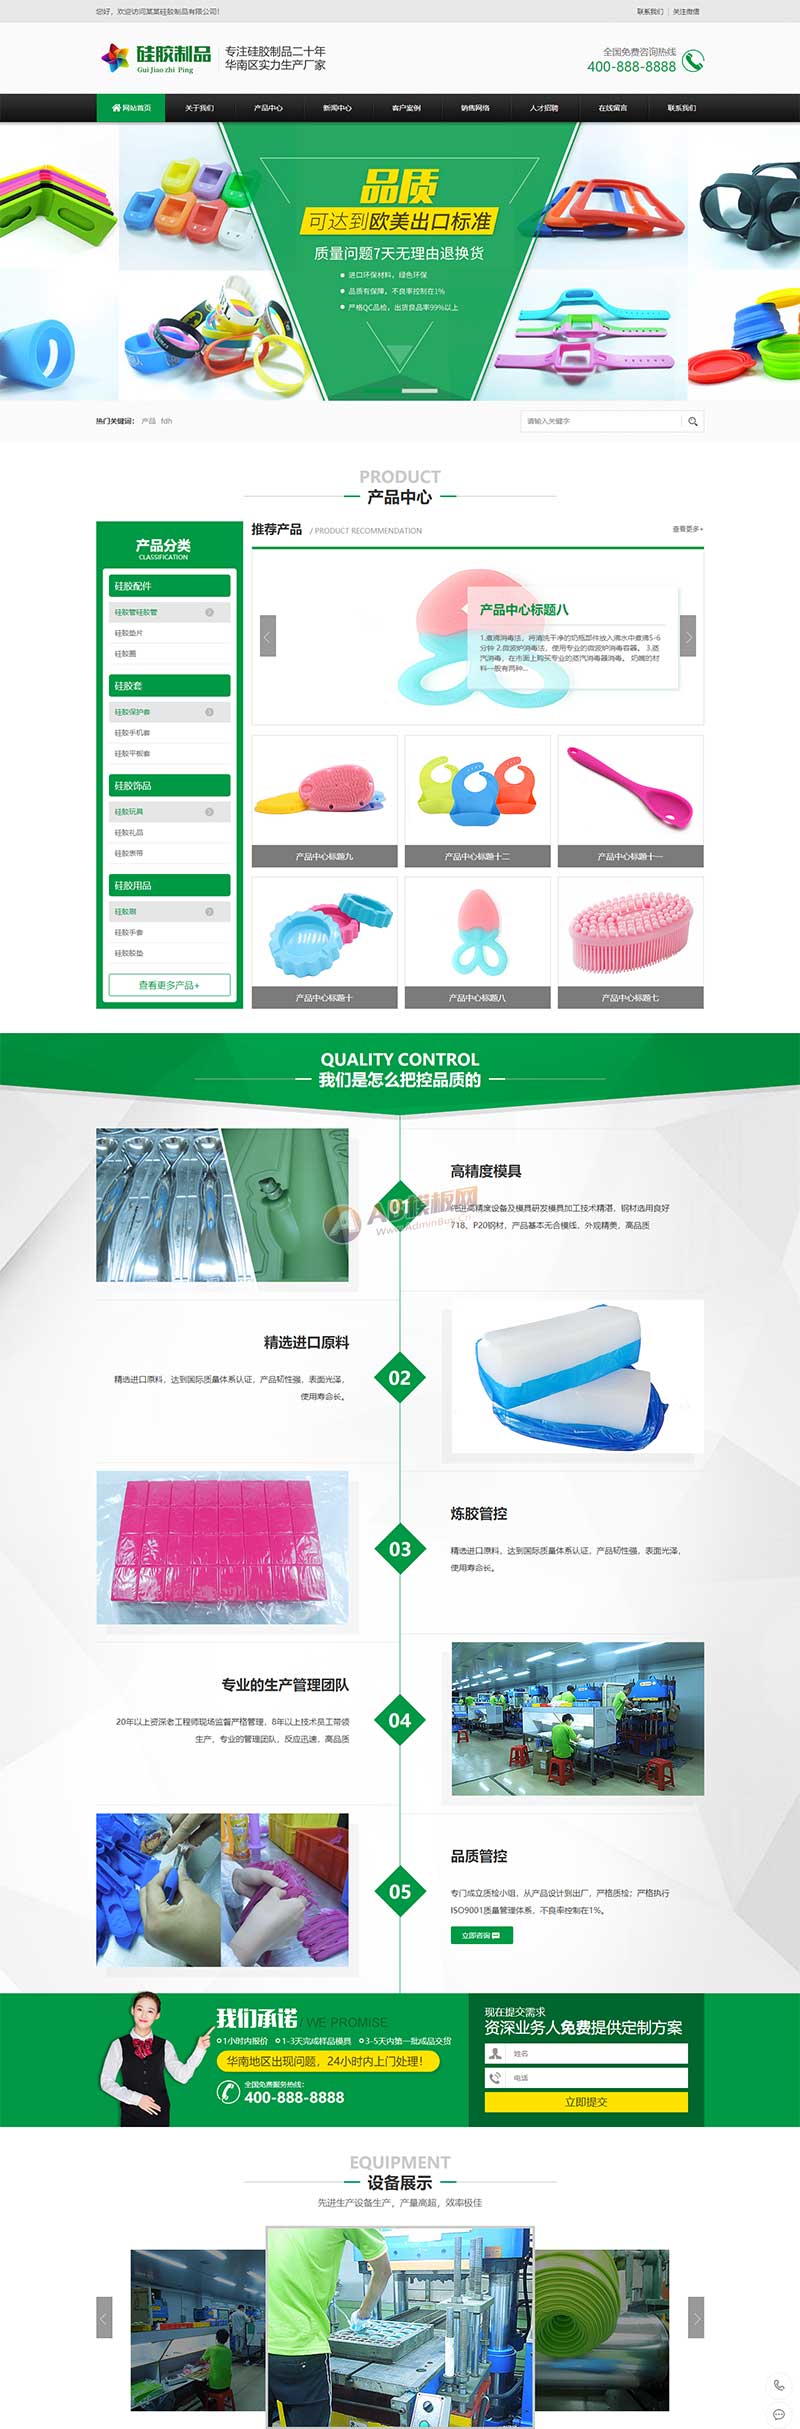 绿色硅胶橡胶制品网站模板 营销型玩具制品网站源码下载